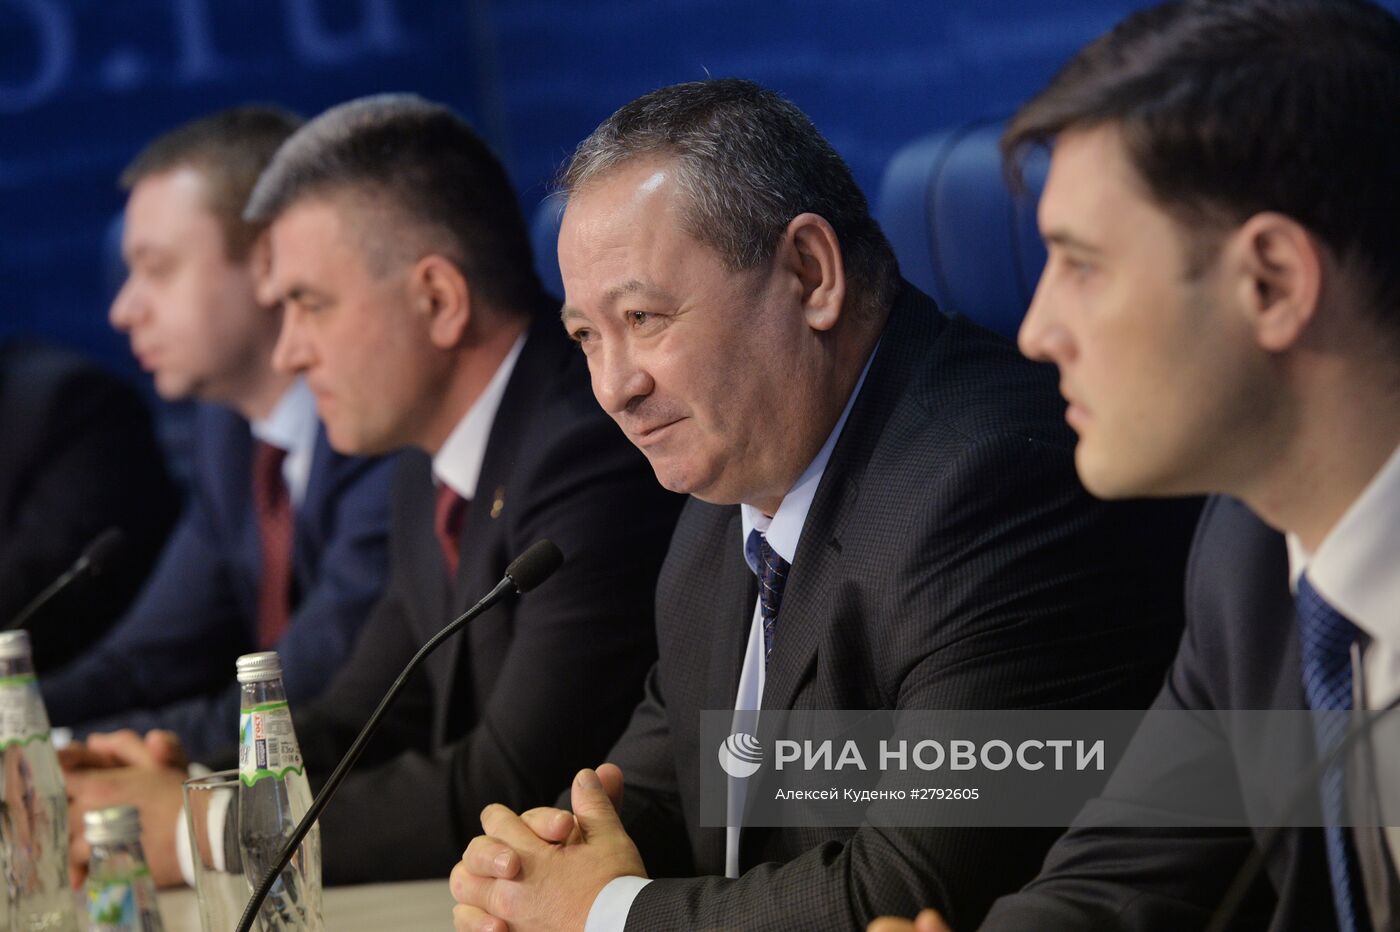 Пресс-конференция на тему: "Приднестровье: как выжить в условиях экономической блокады?"